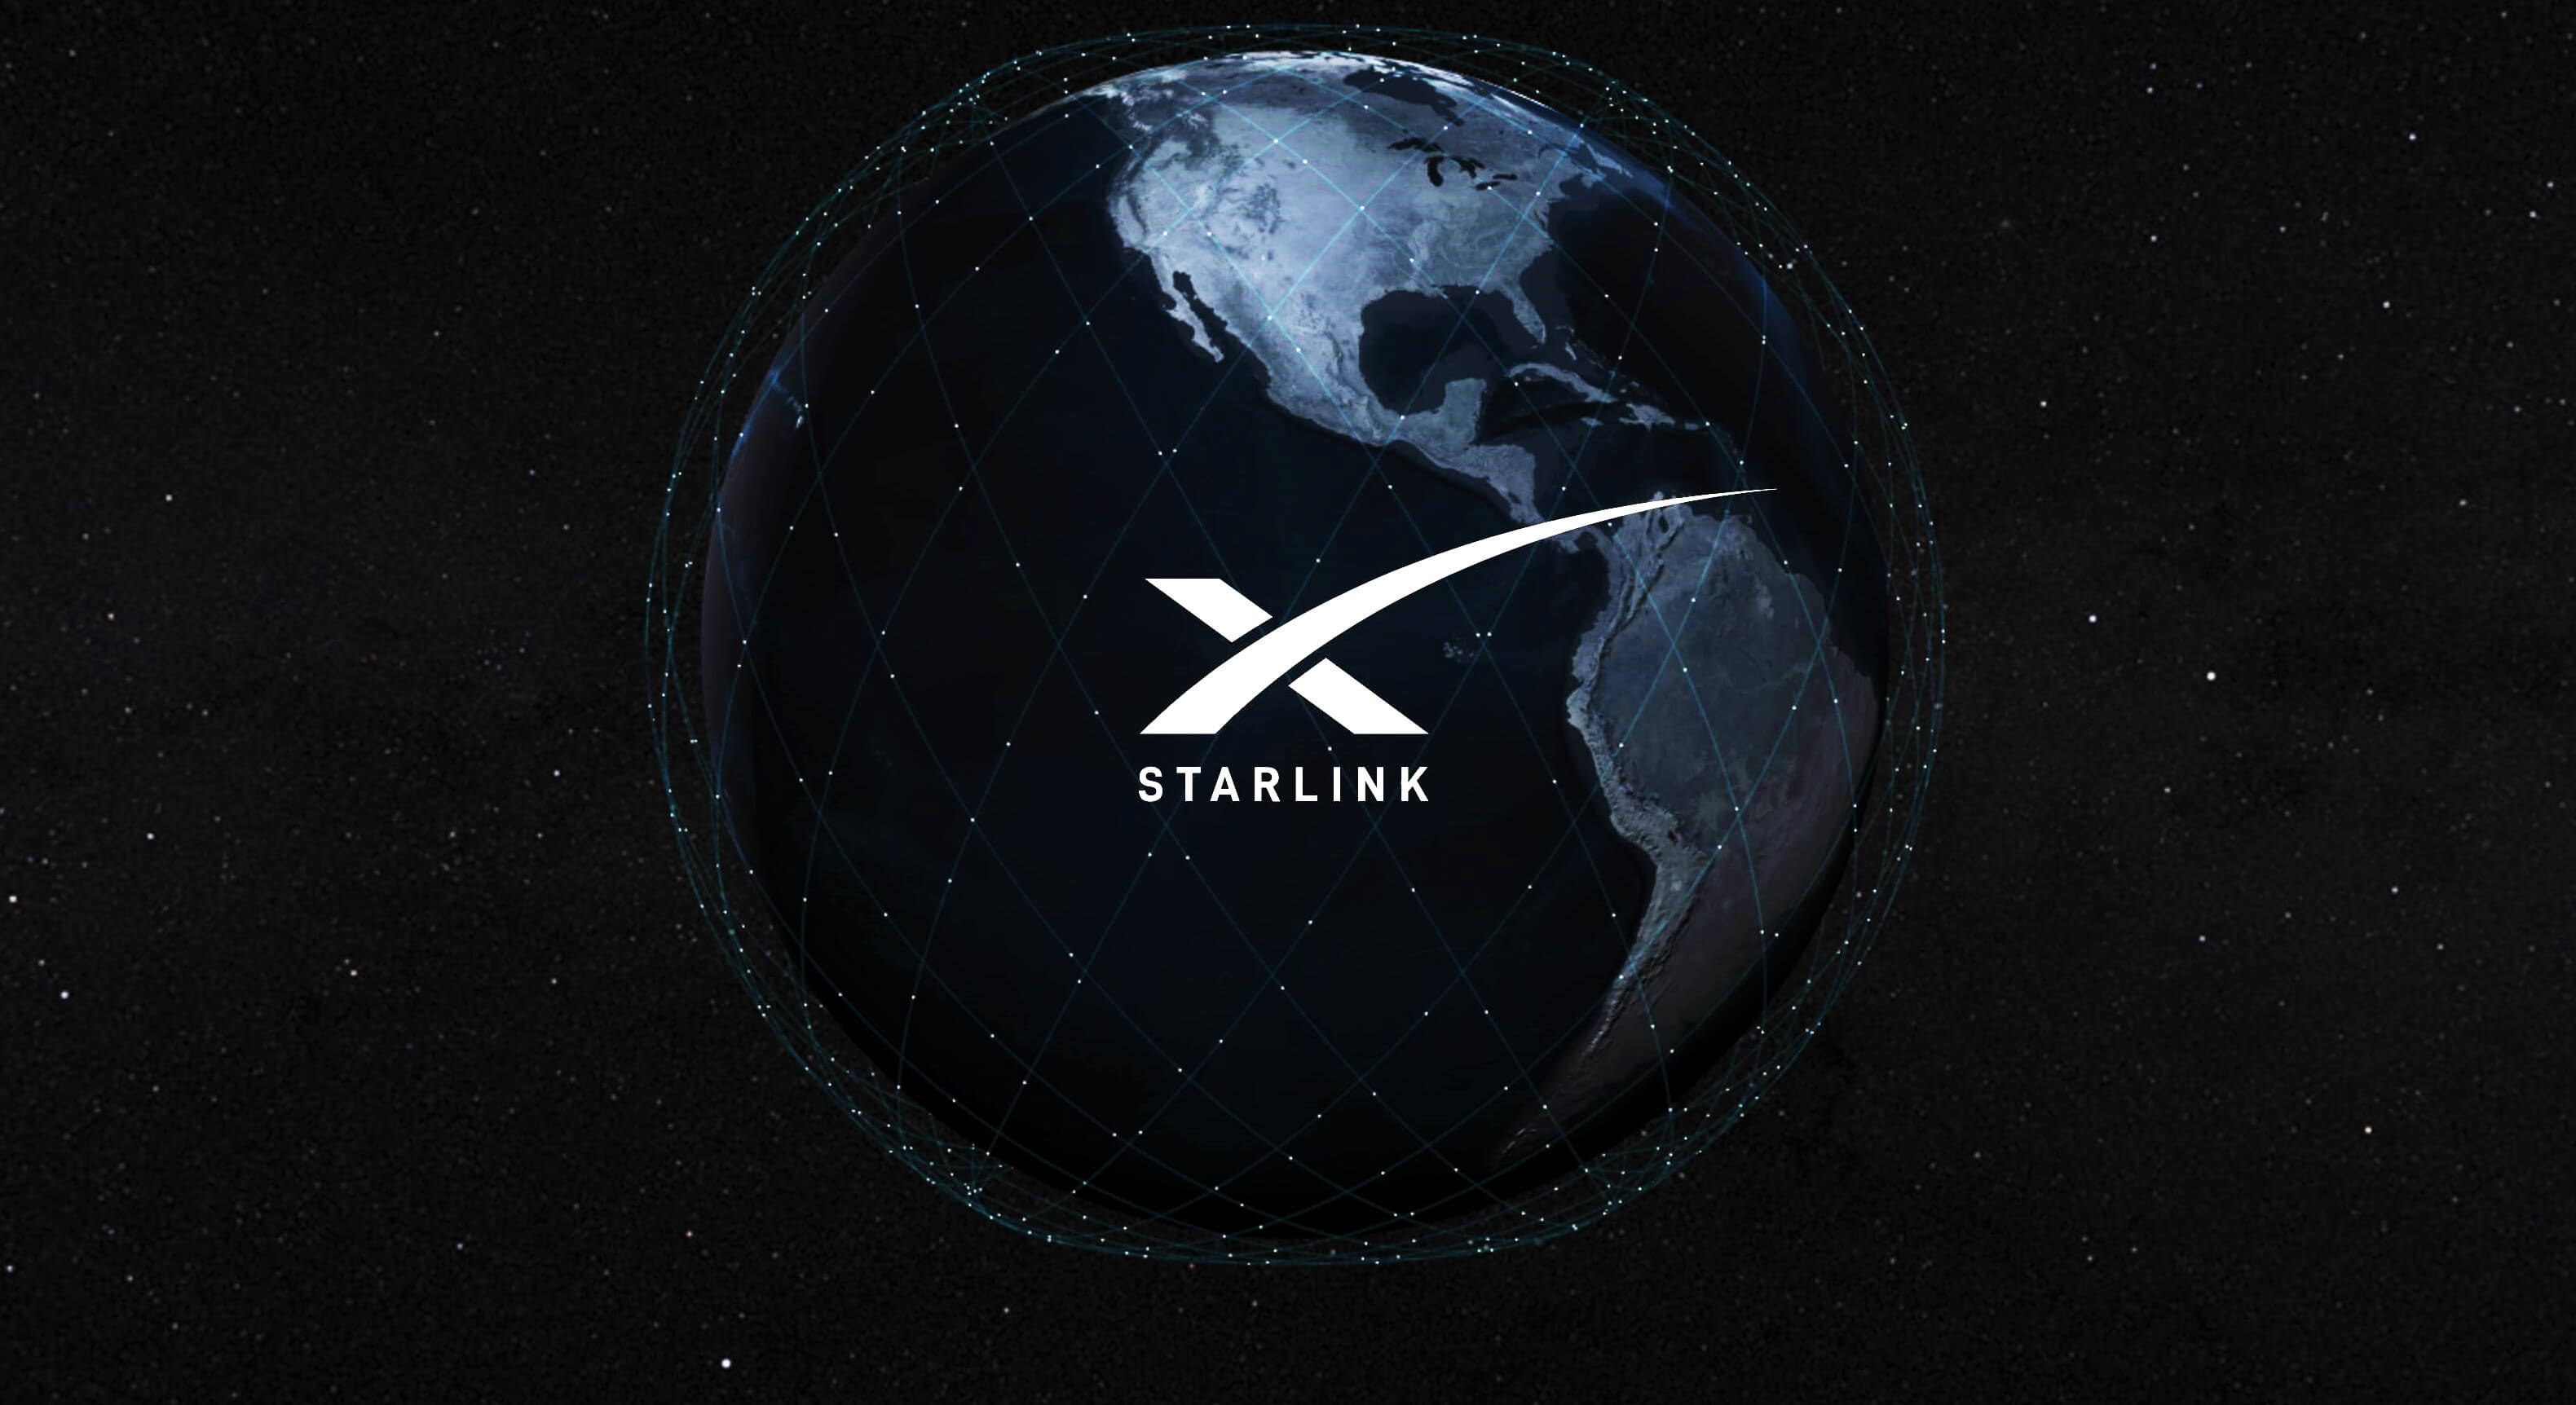 يقول مدير العمليات في SpaceX إن شركة Starlink حققت ربعًا إيجابيًا للتدفق النقدي في عام 2022